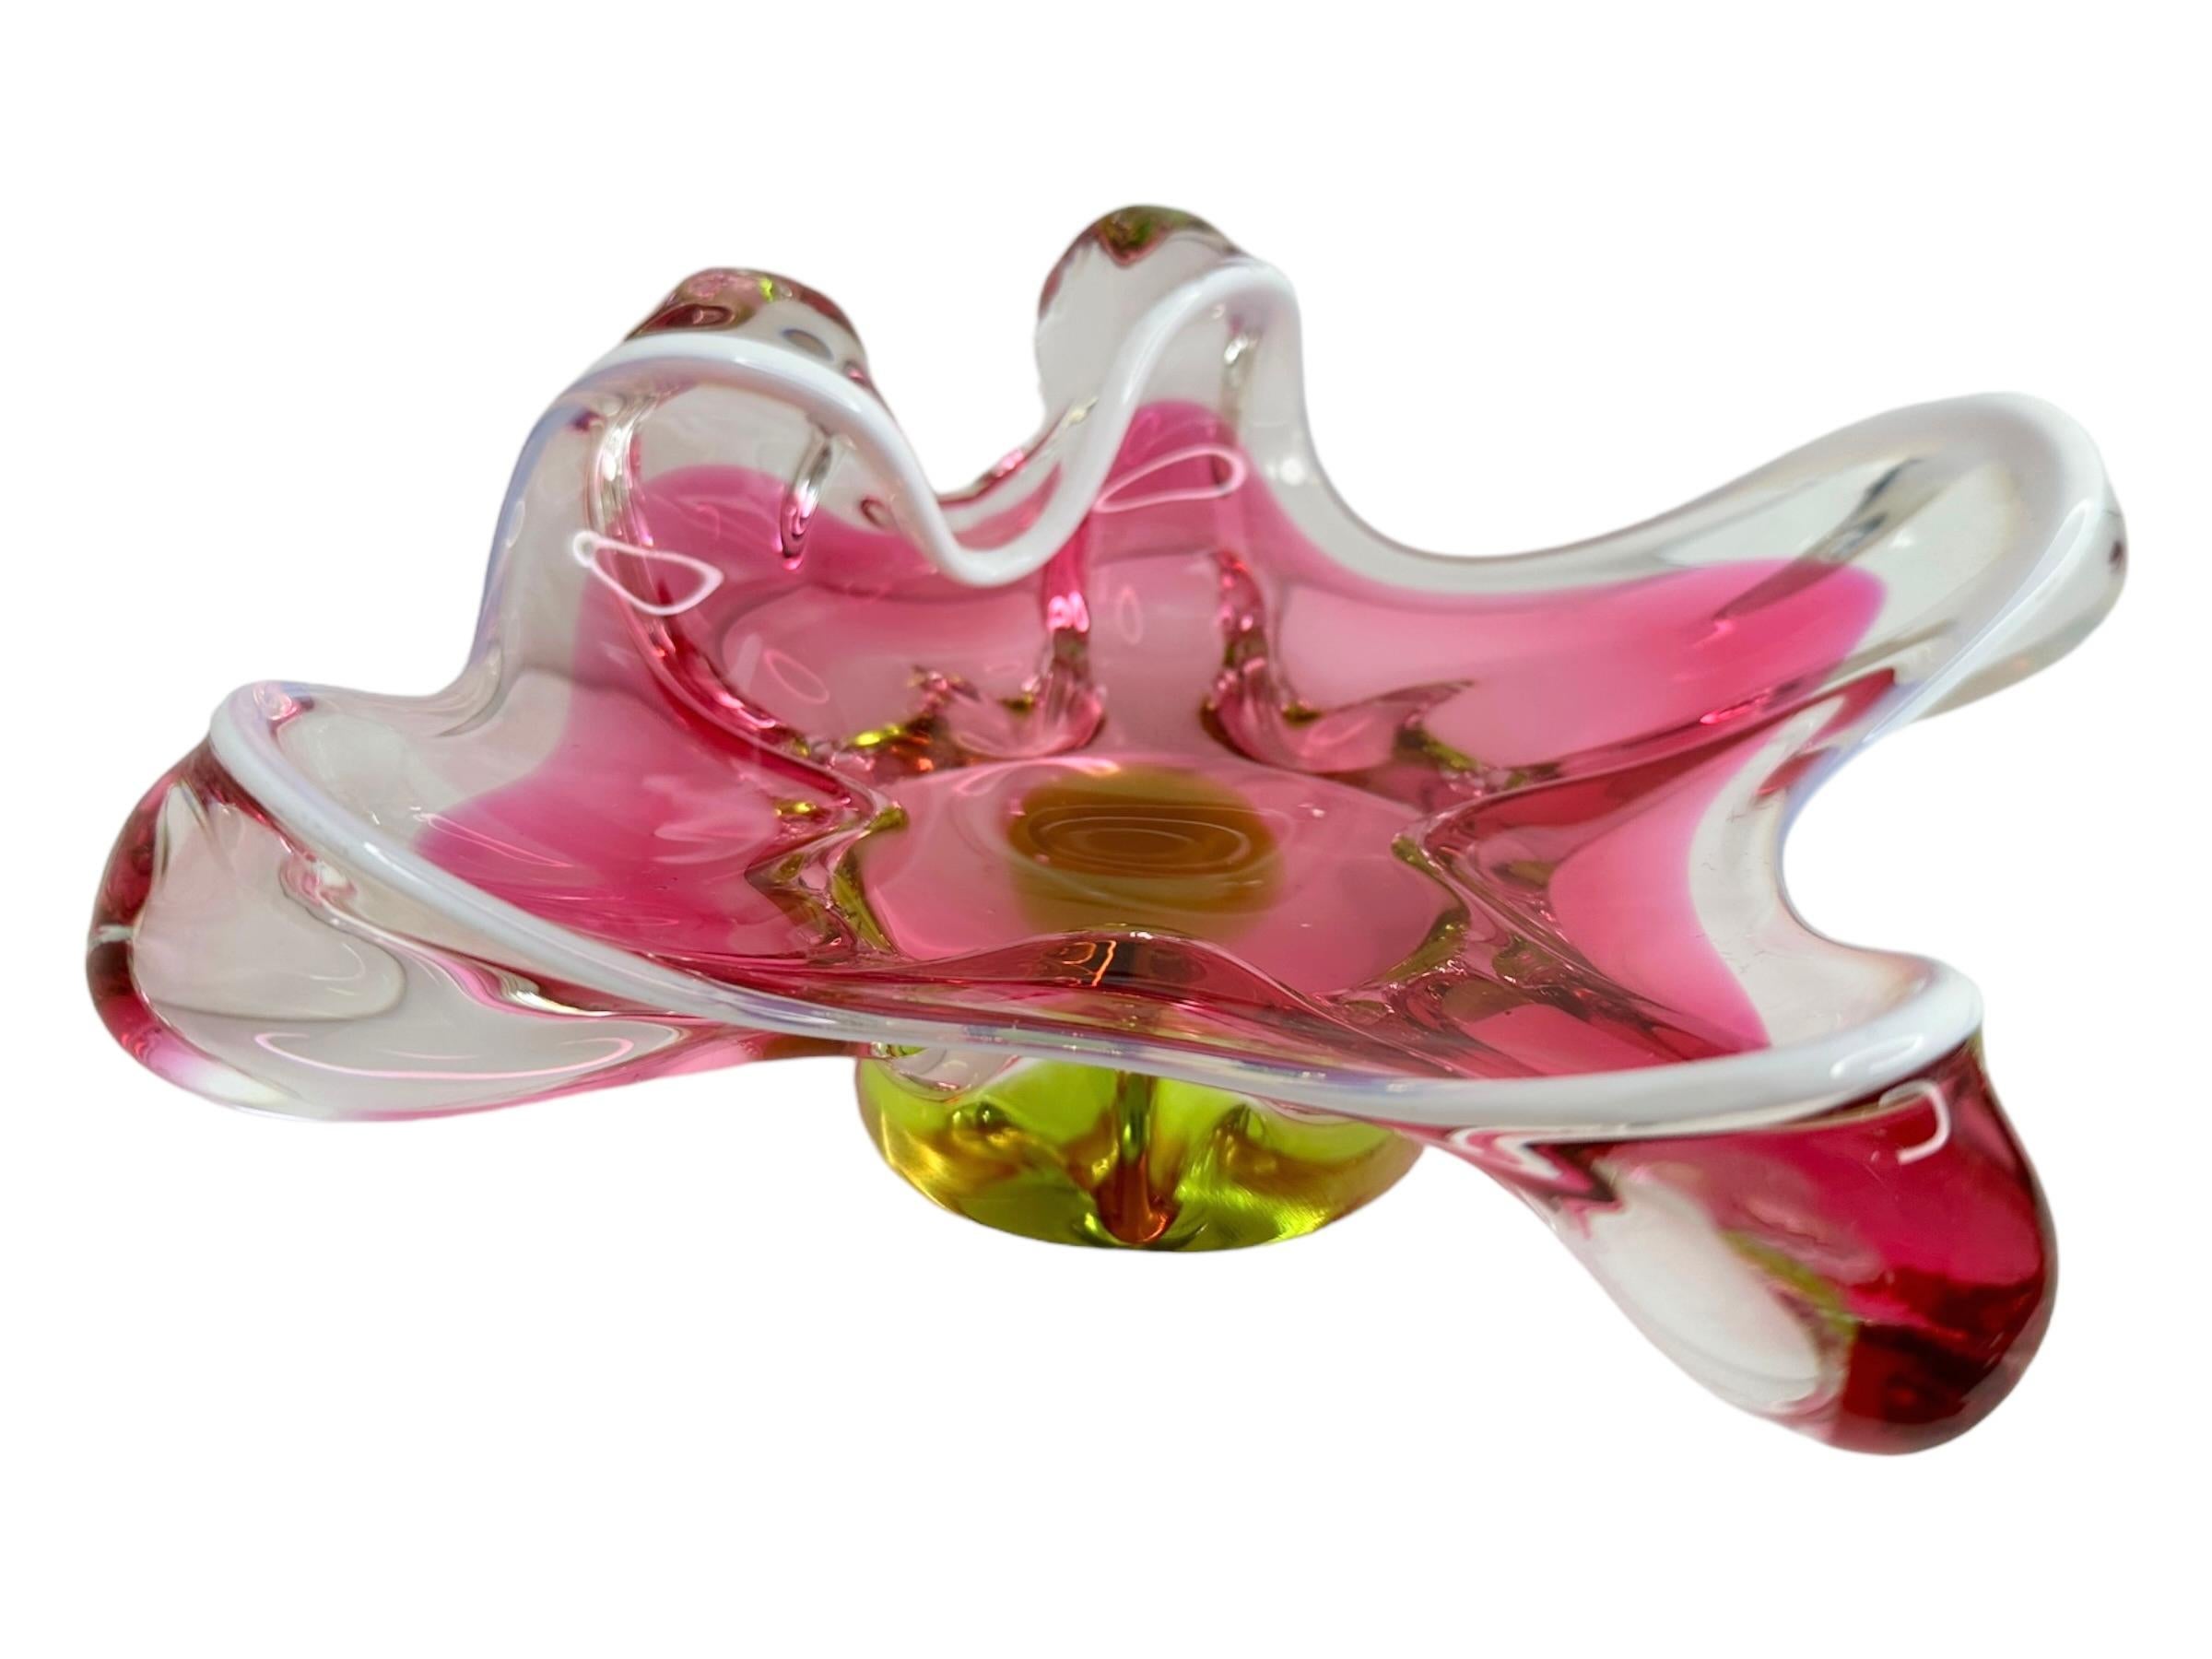 Magnifique pièce en verre d'art de Murano soufflée à la main avec les techniques Sommerso et bullicante. Magnifique bol de forme organique, fourre-tout ou pièce centrale, Venise, Murano, Italie, années 1980. Les couleurs sont le rose, le